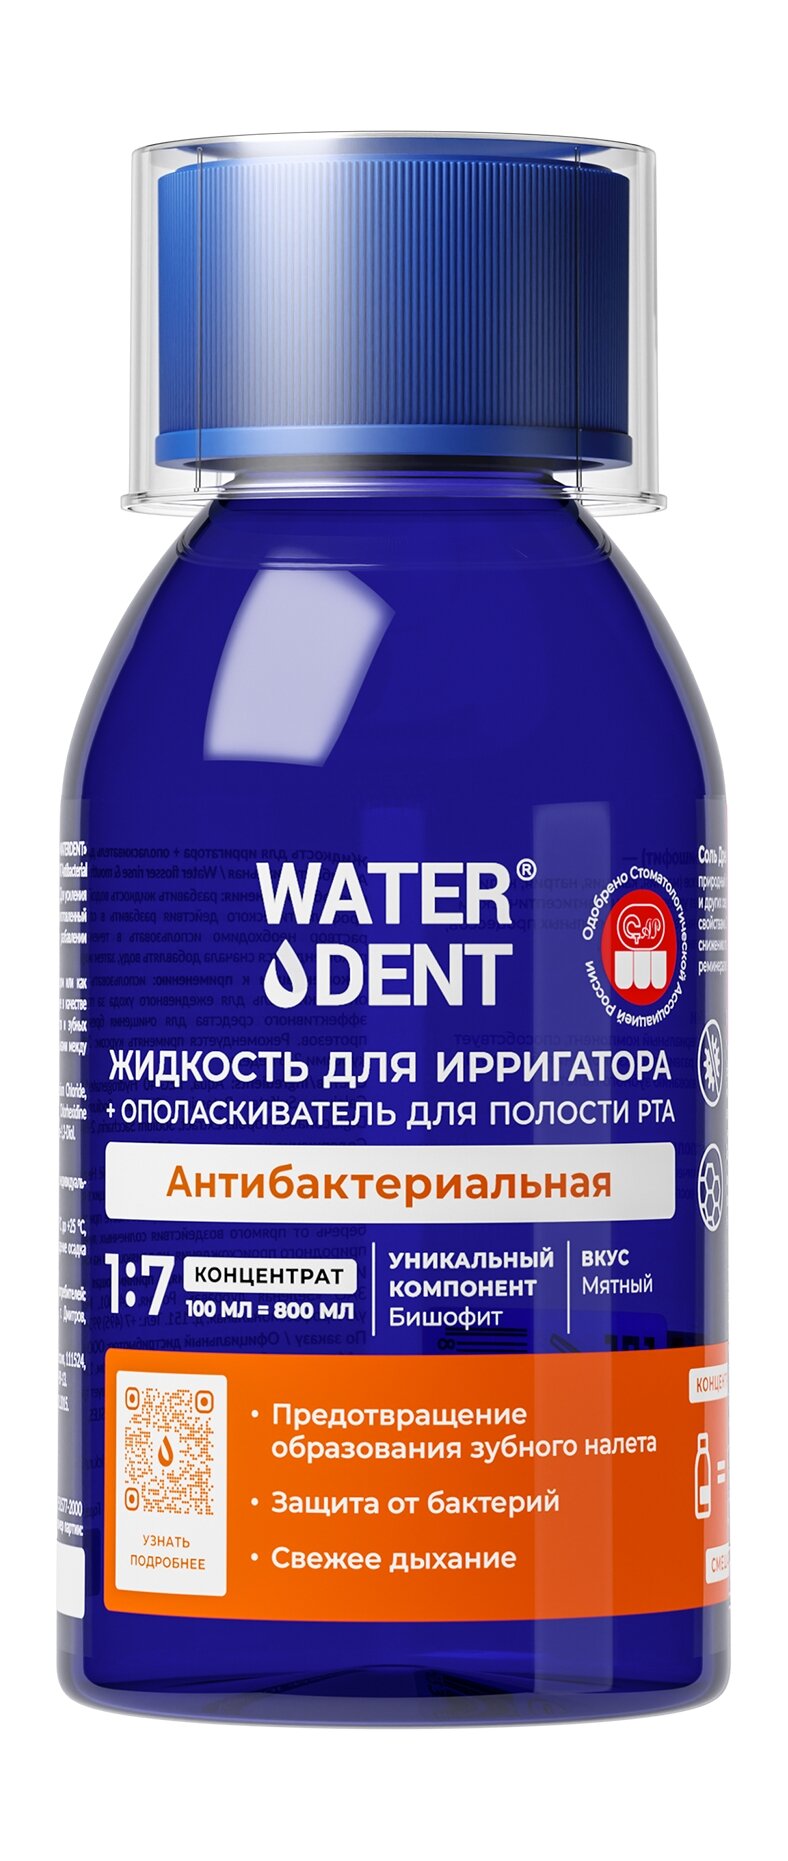 WATERDENT Жидкость для ирригатора + ополаскиватель для полости рта 2в1 Антибактериальная, 100 мл